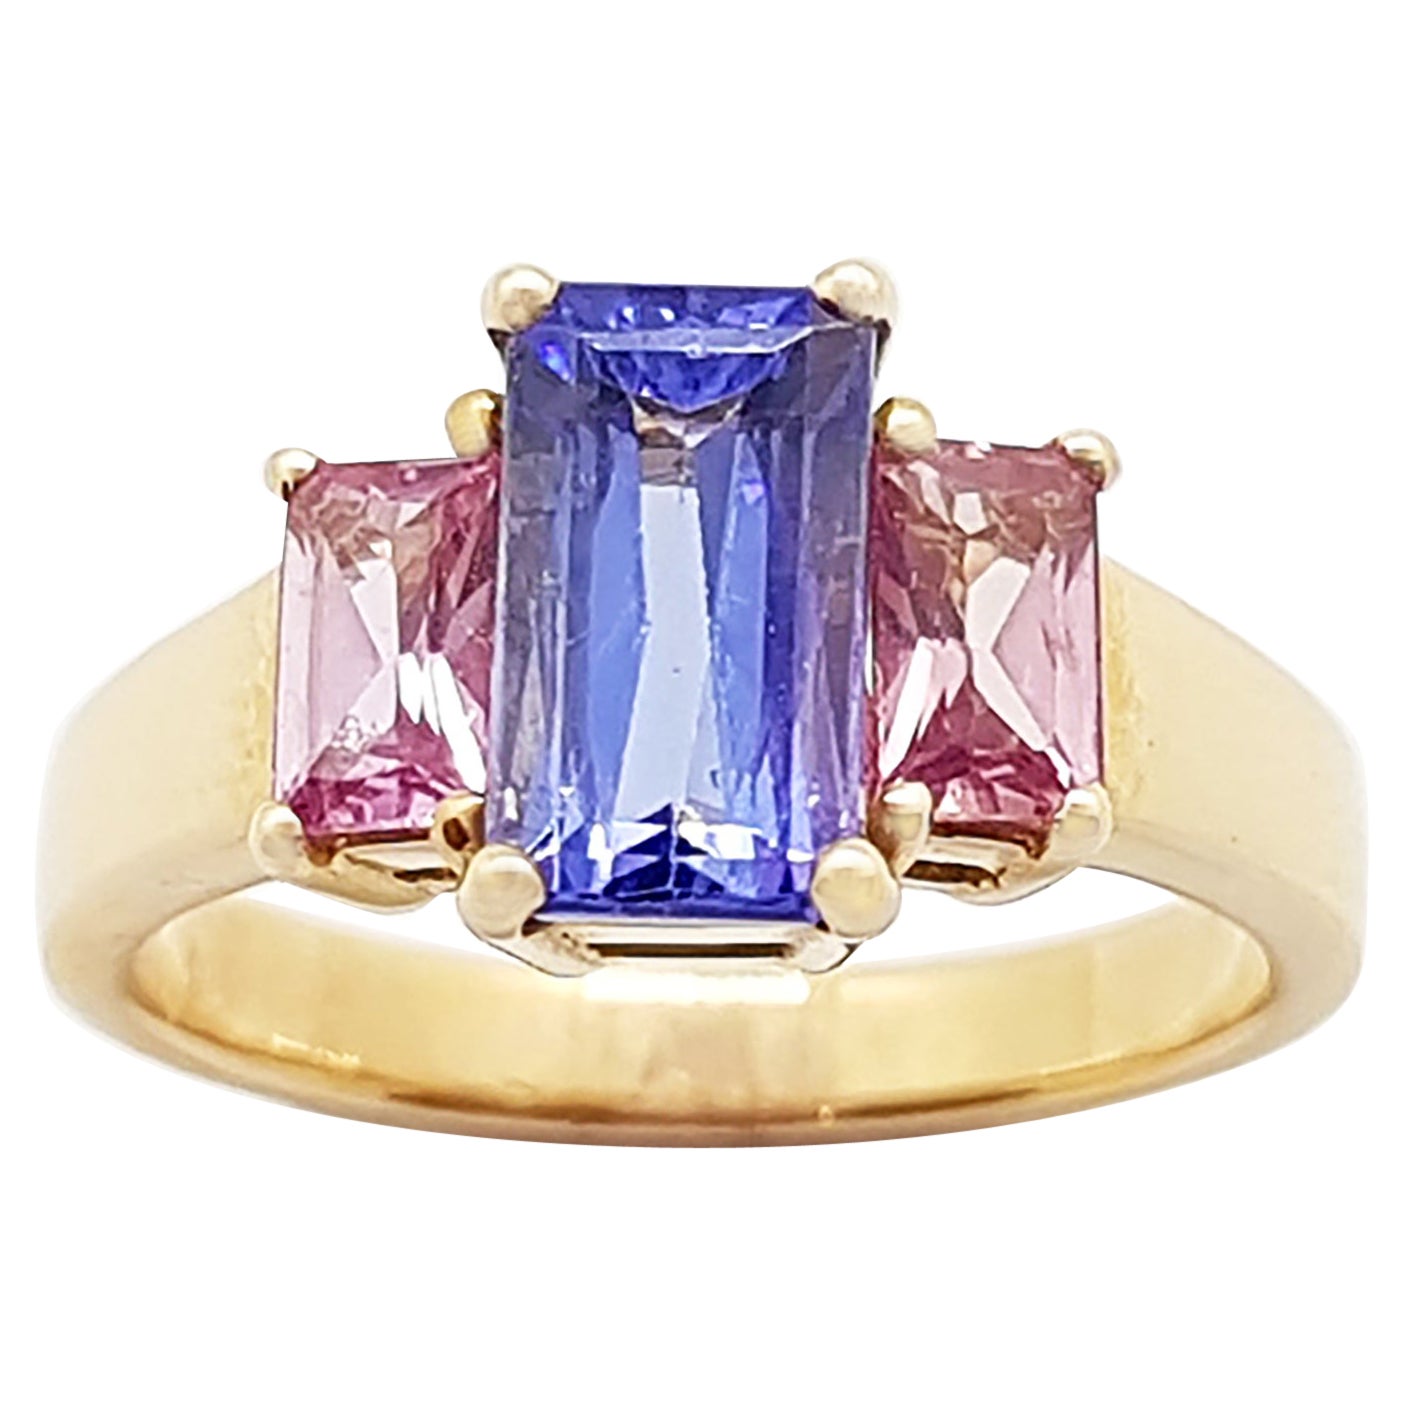 Tanzanite with Pink Sapphire Ring Set in 18 Karat Rose Gold Settings